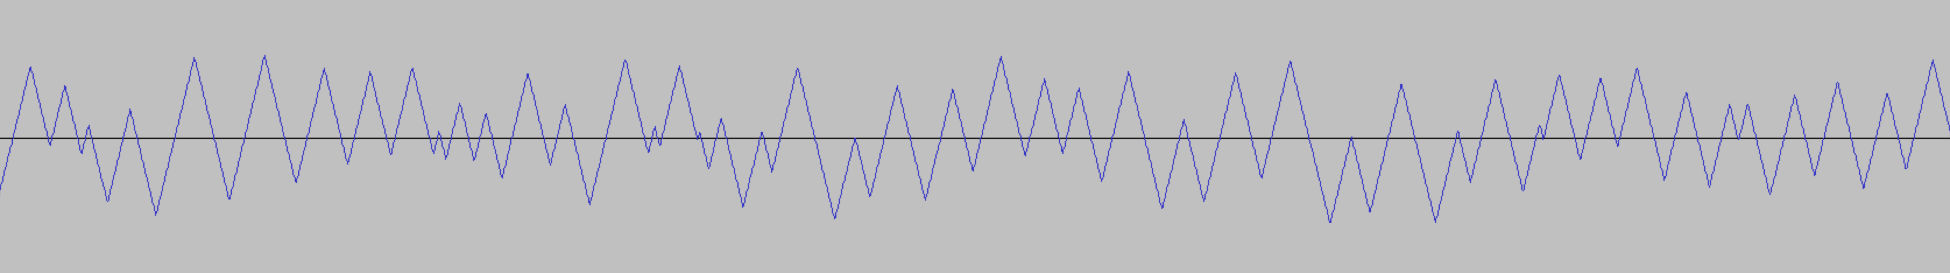 The filtered noise waveform